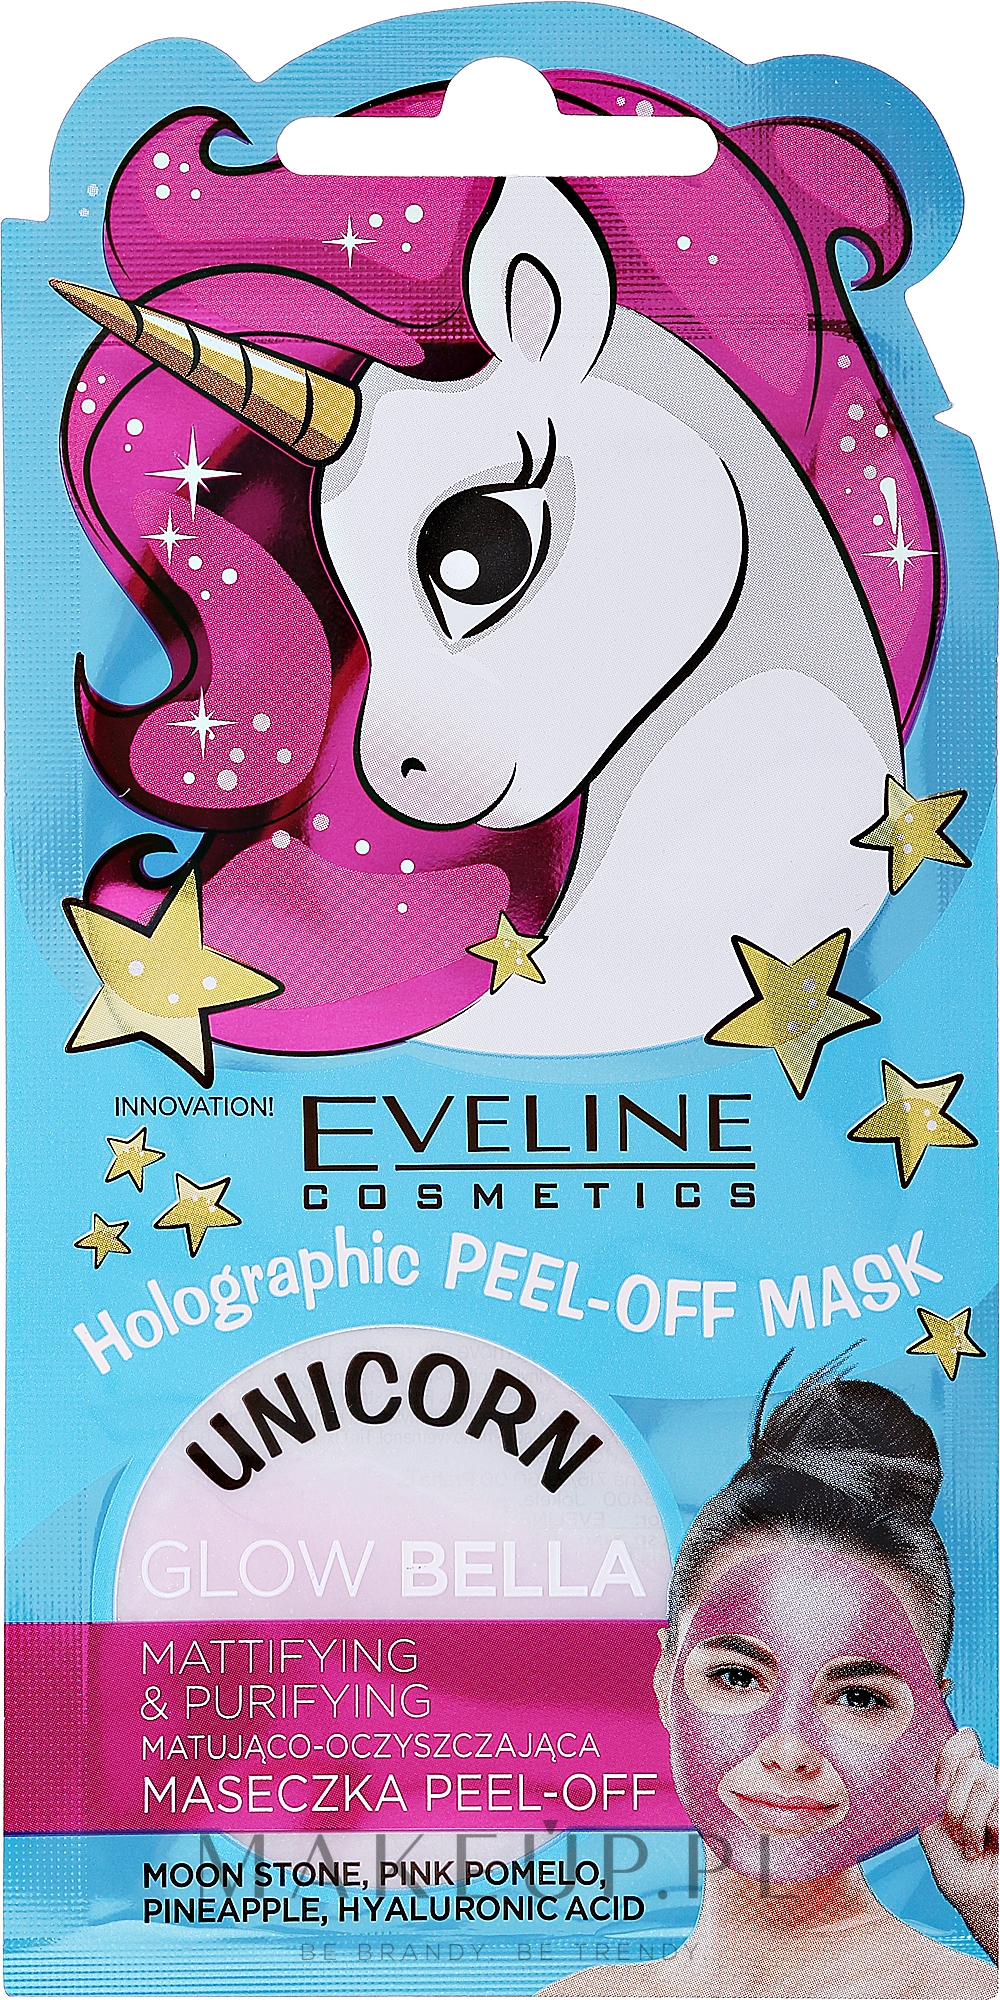 Matująco-oczyszczająca maseczka peel-off - Eveline Cosmetics Holographic Peel-Off Mask Unicorn  — Zdjęcie 7 ml